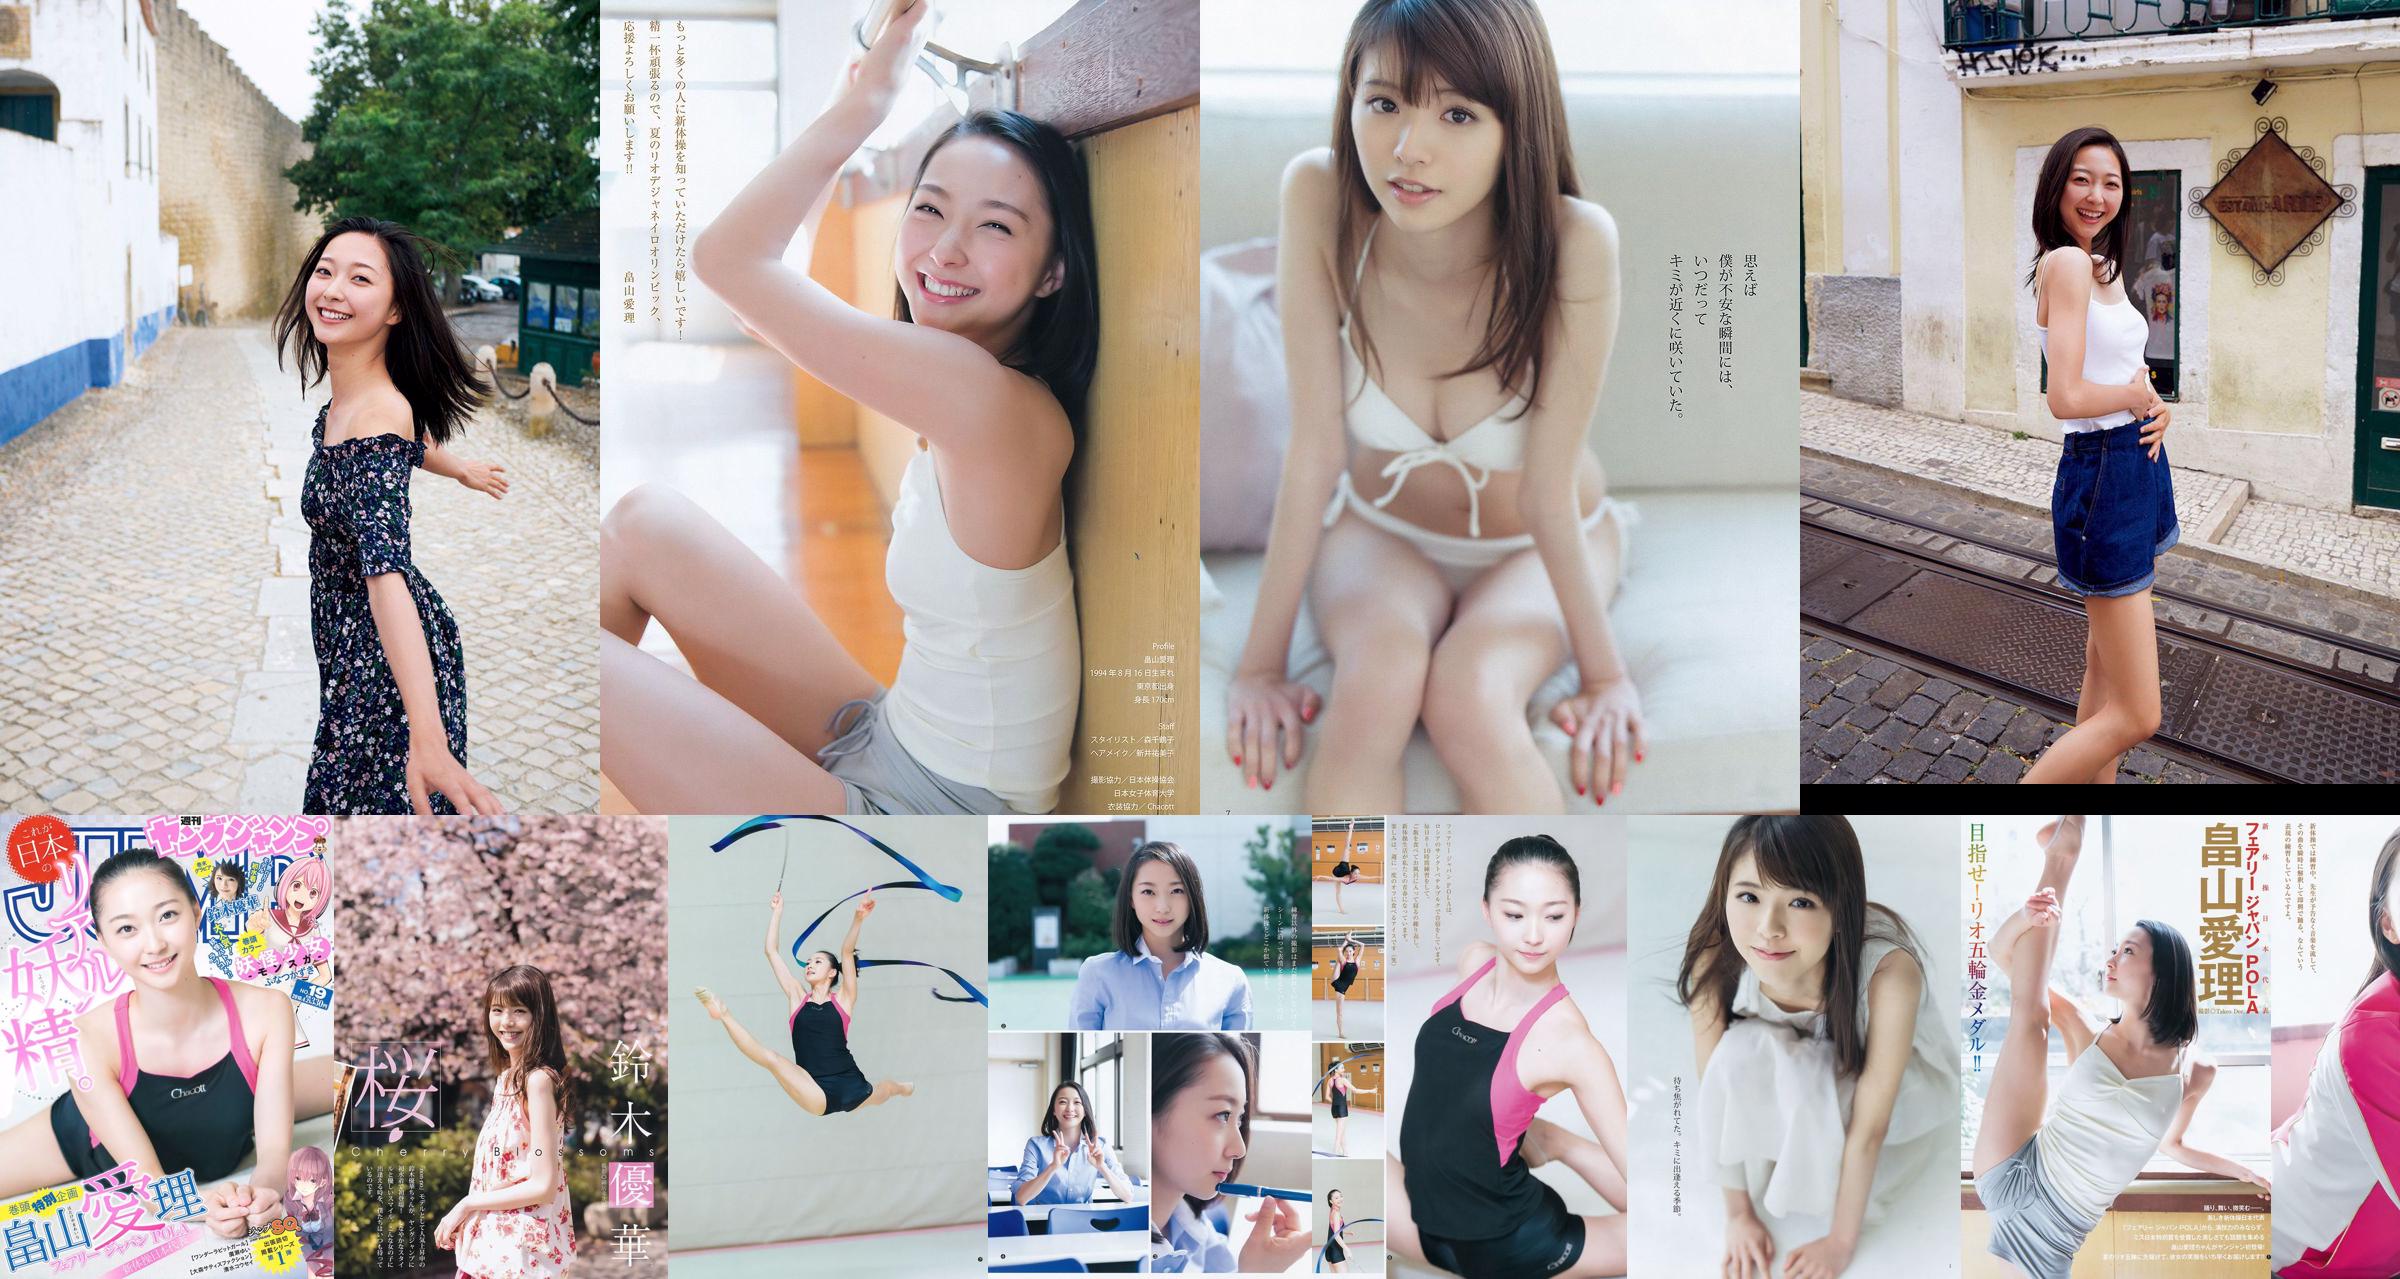 [ENTAME] Mai Shiraishi Nanase Nishino Rena Shimada Yui Takano Ausgabe März 2014 Foto No.2a42f3 Seite 3